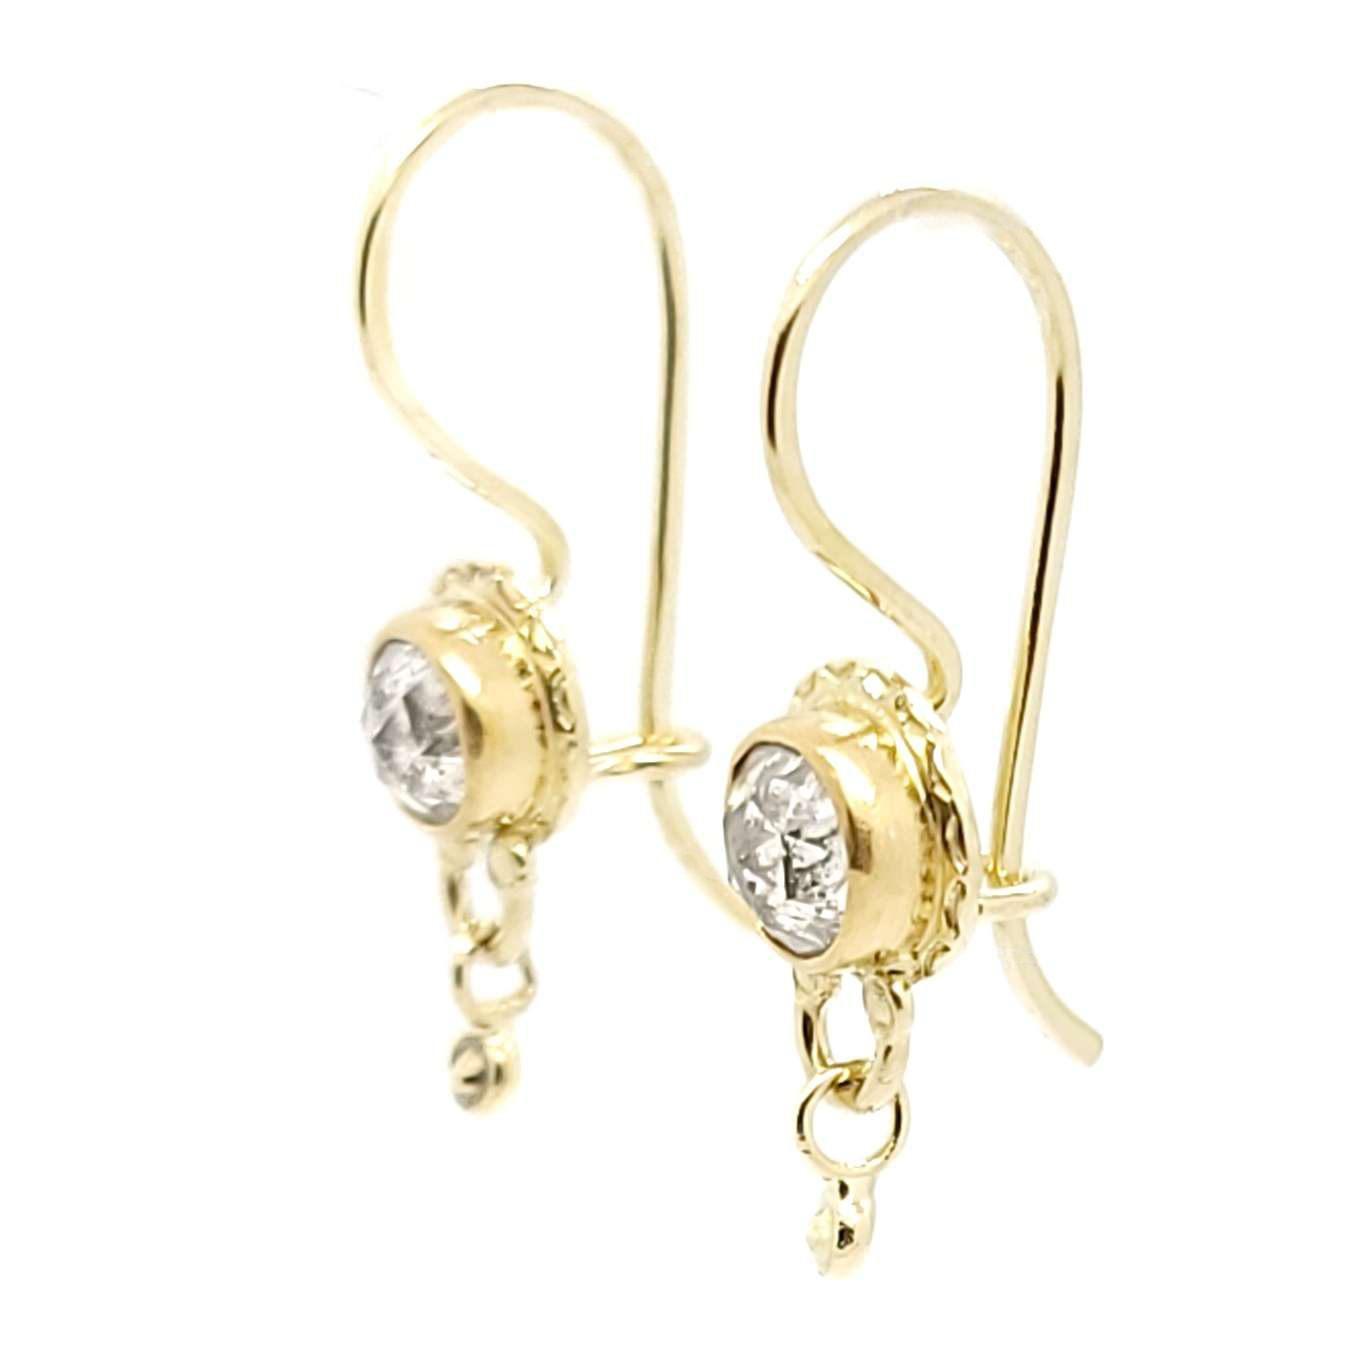 Earrings - Rose Cut Diamonds in 22k and 18k Yellow Gold by Allison Kallaway